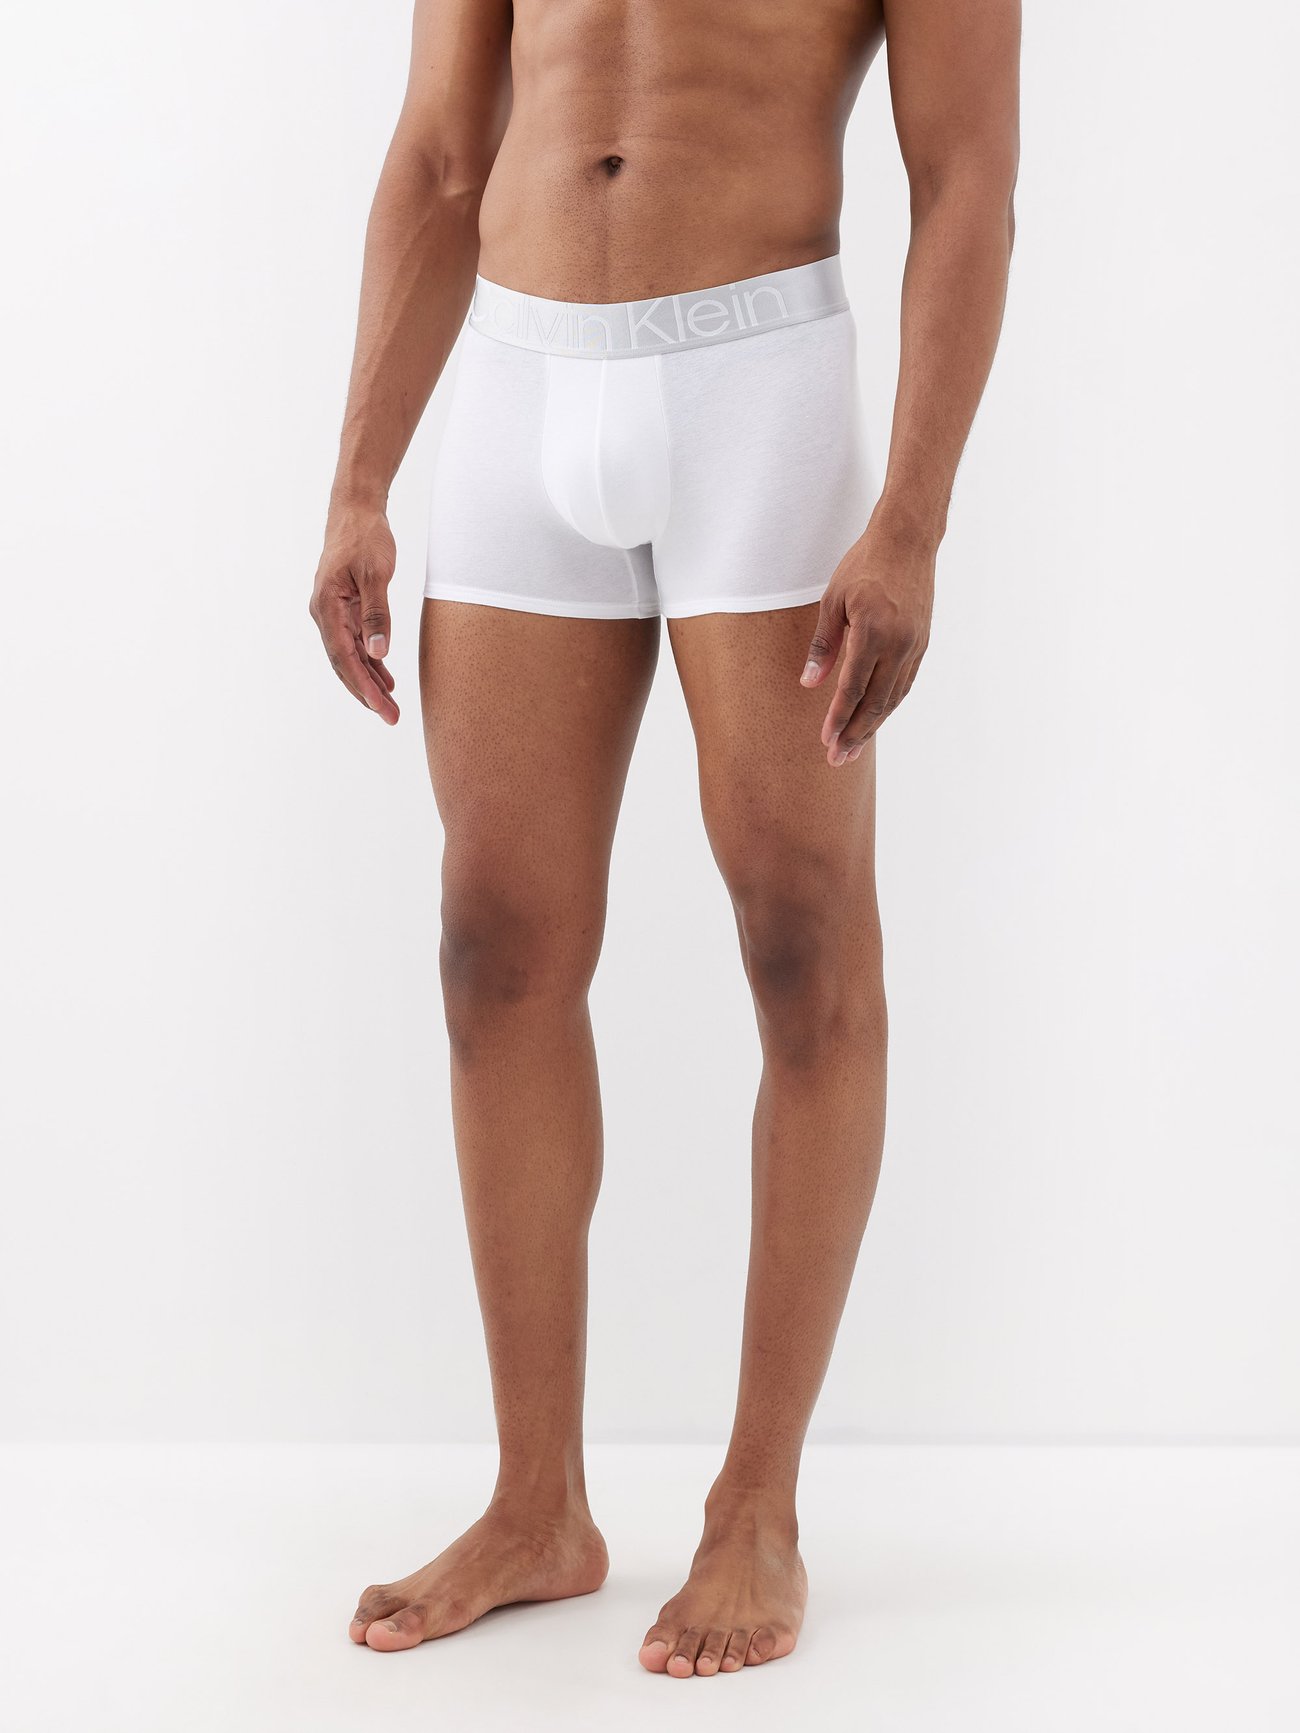 White Pack of Underwear cotton-blend Calvin Klein three | US briefs MATCHES boxer 